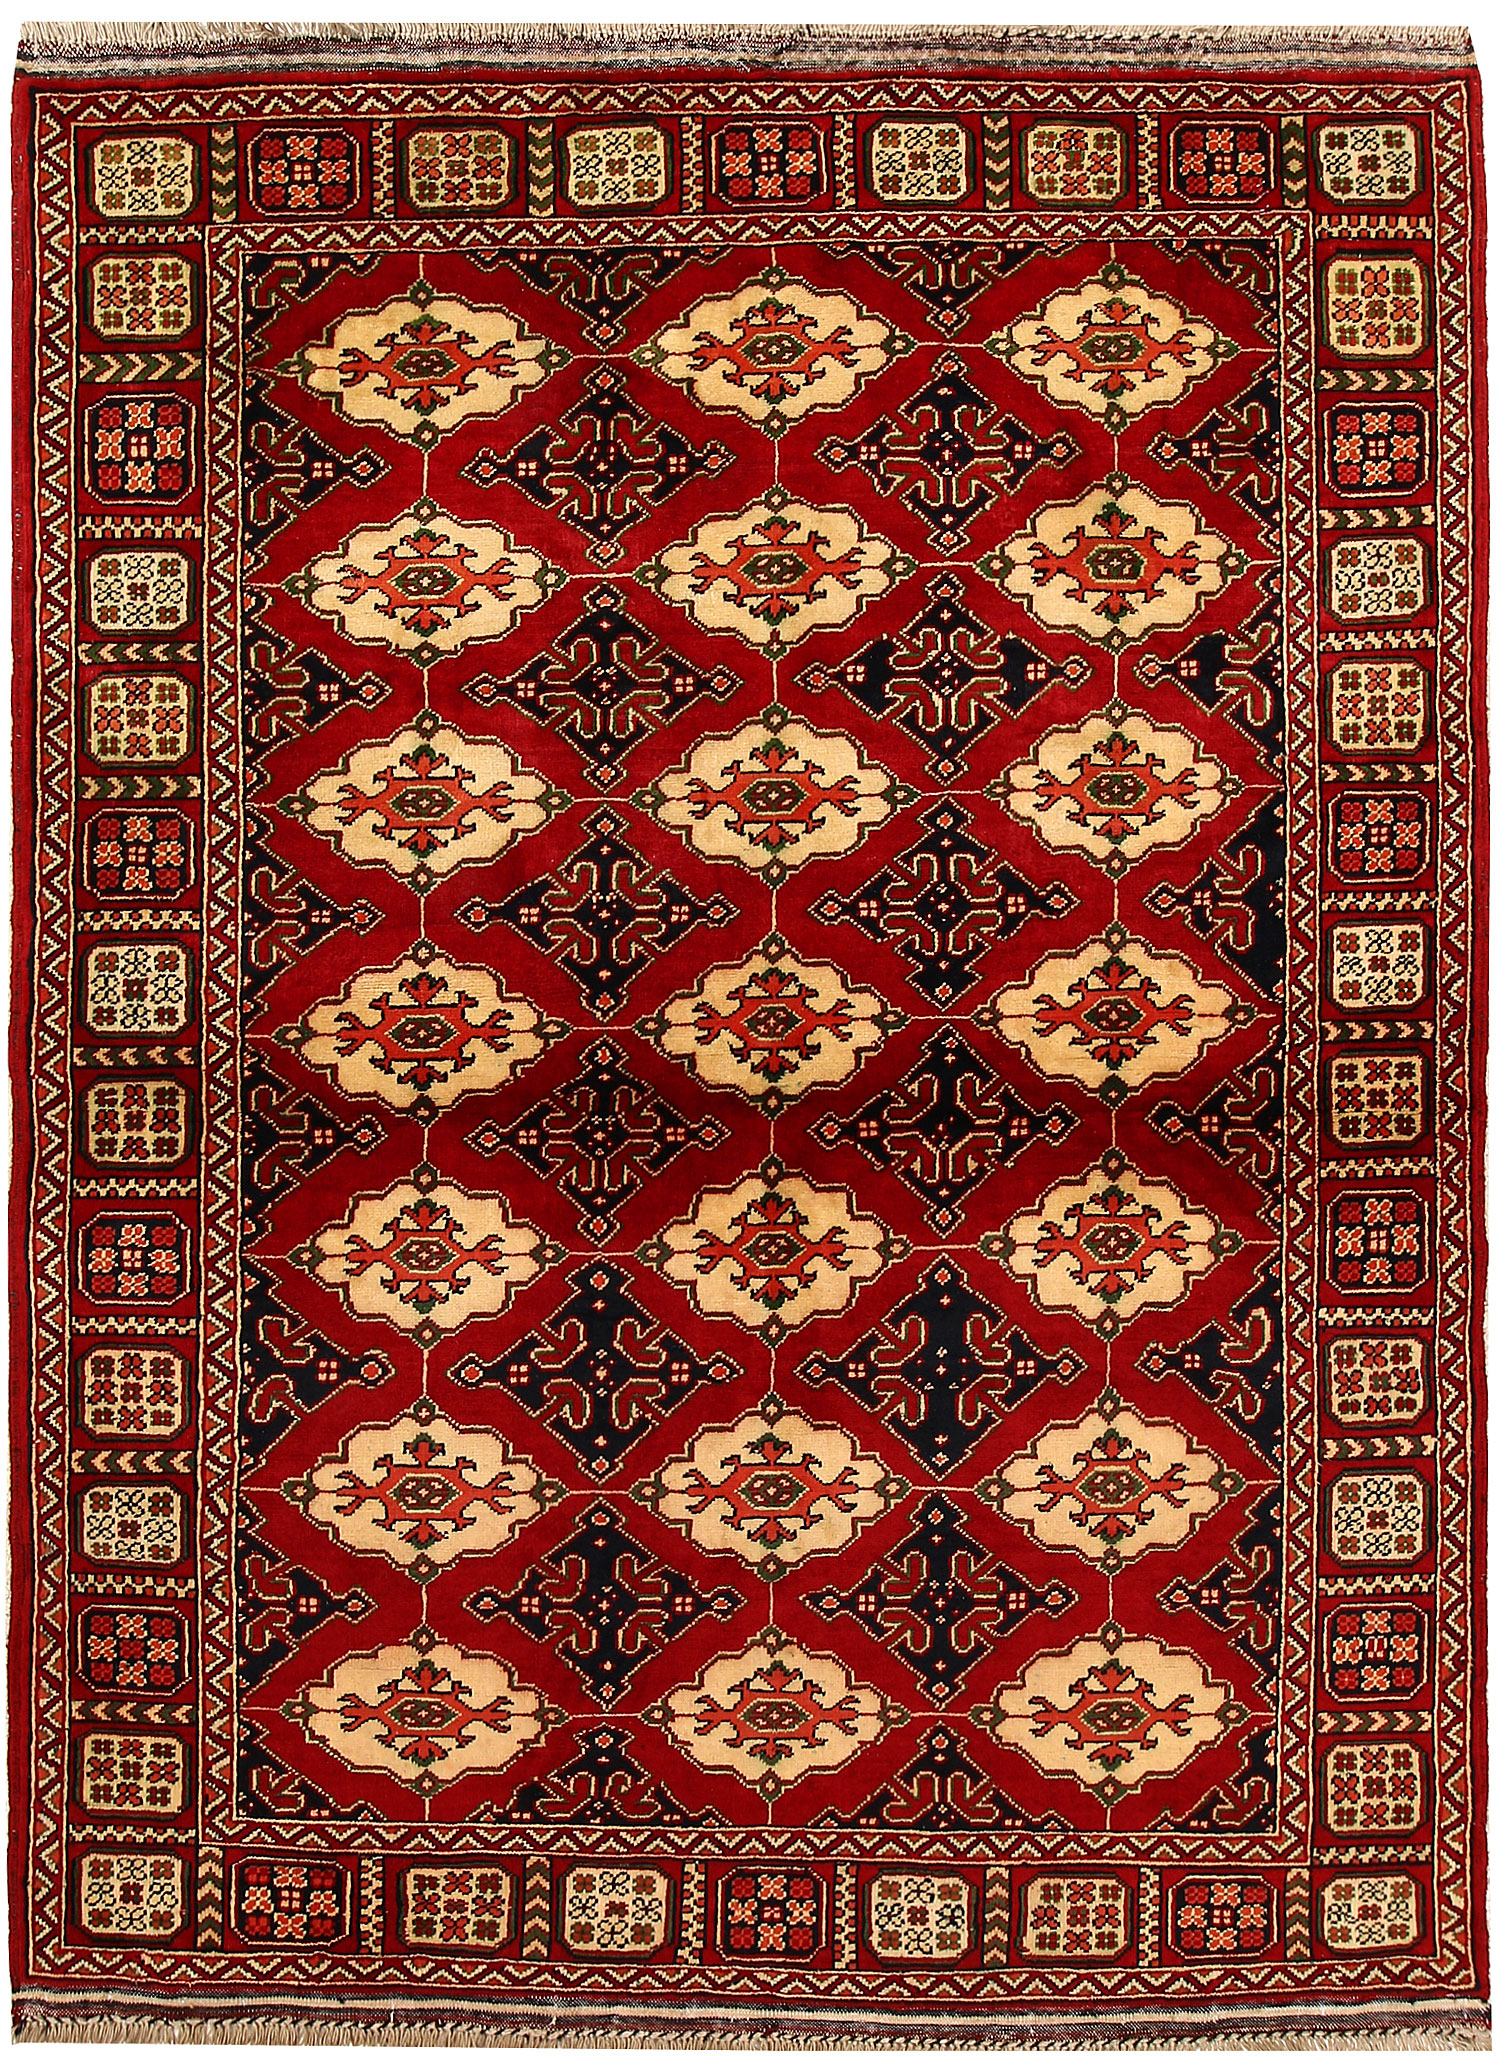 Imperial Carpet